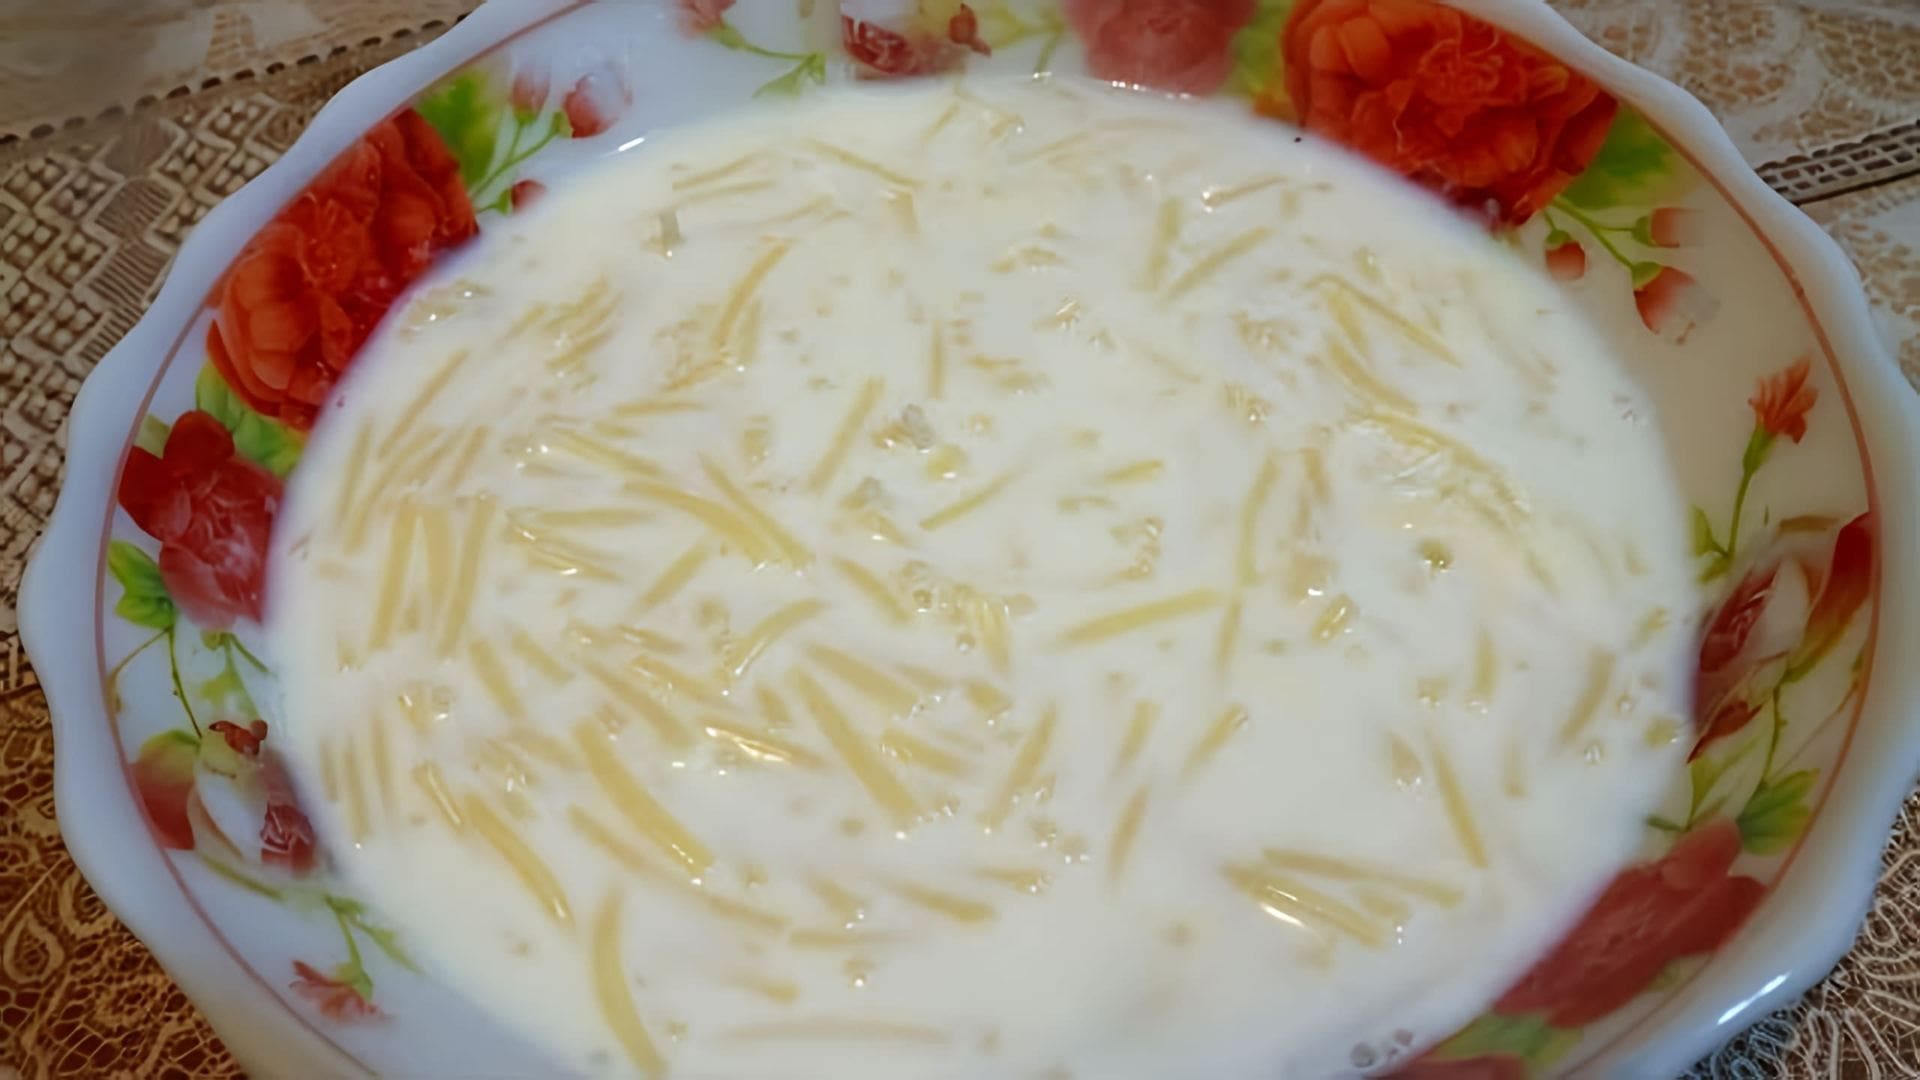 В этом видео демонстрируется рецепт молочного супа с вермишелью, который готовится очень быстро и требует минимального количества ингредиентов